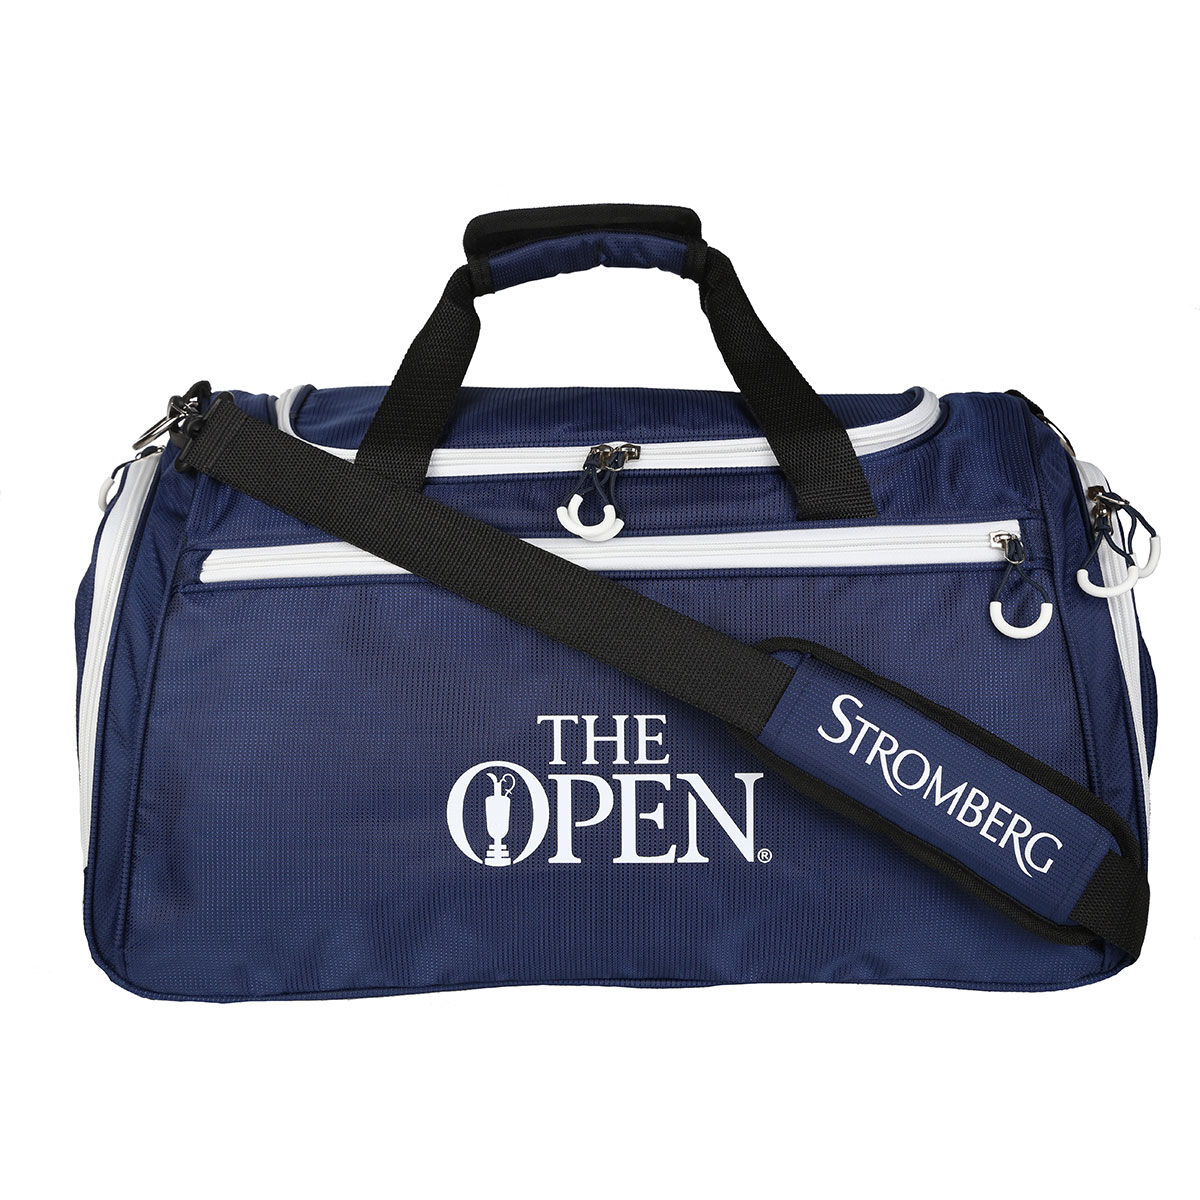 Stromberg 'Golf' Holdall Bag The Open|navy